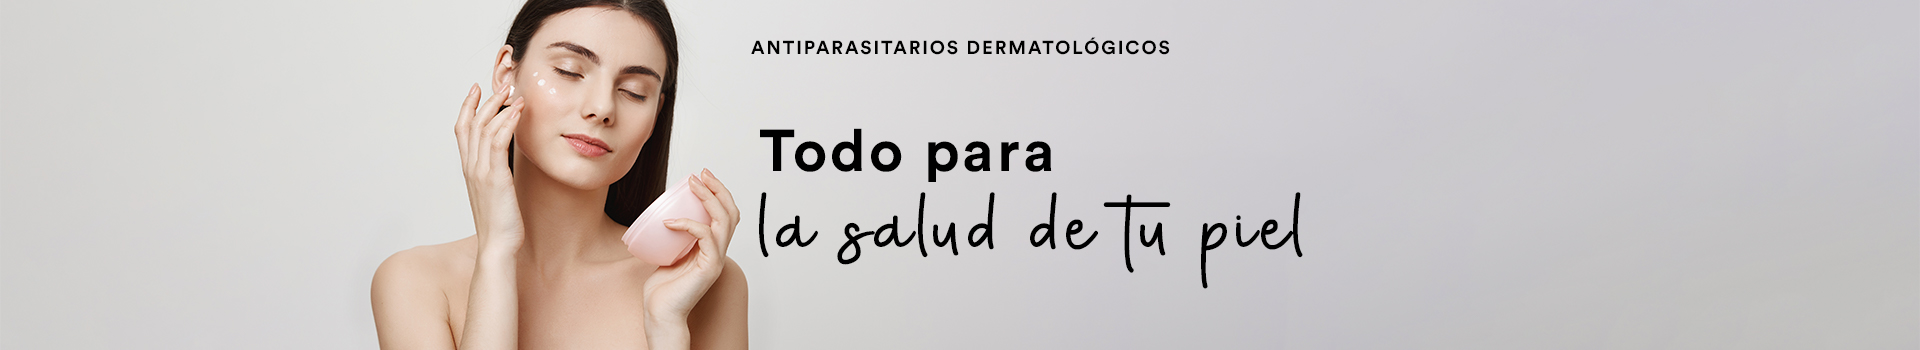 Antiparasotario dermatologico_sección búsqueda productos